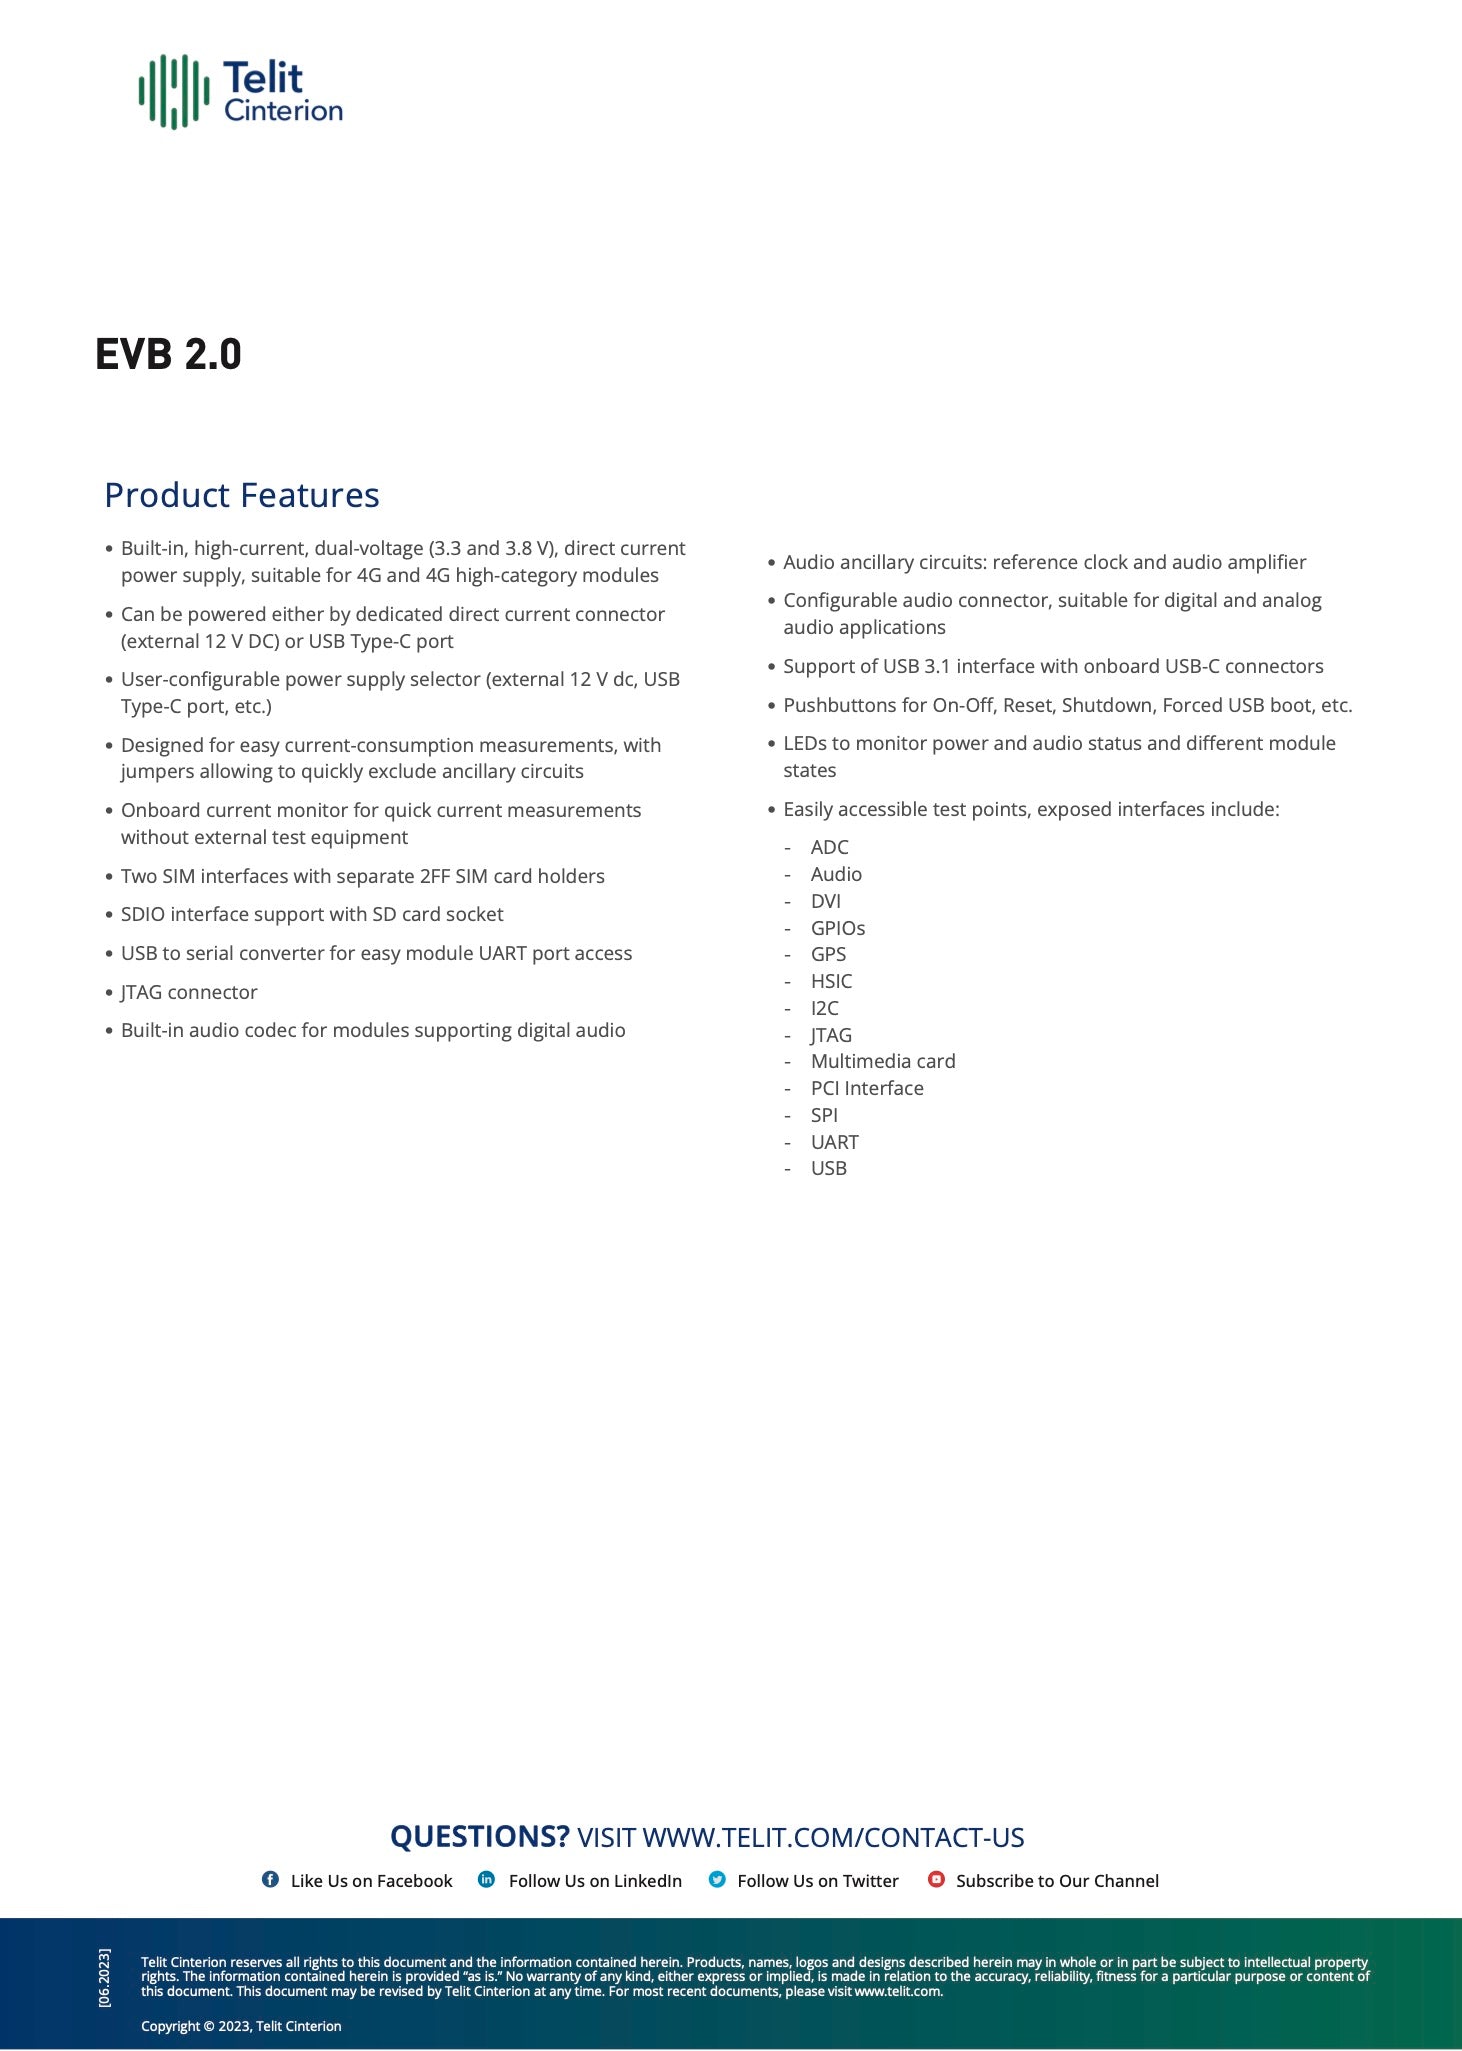 Telit EVK - EVB 2.0 for Translation Boards (TLB)